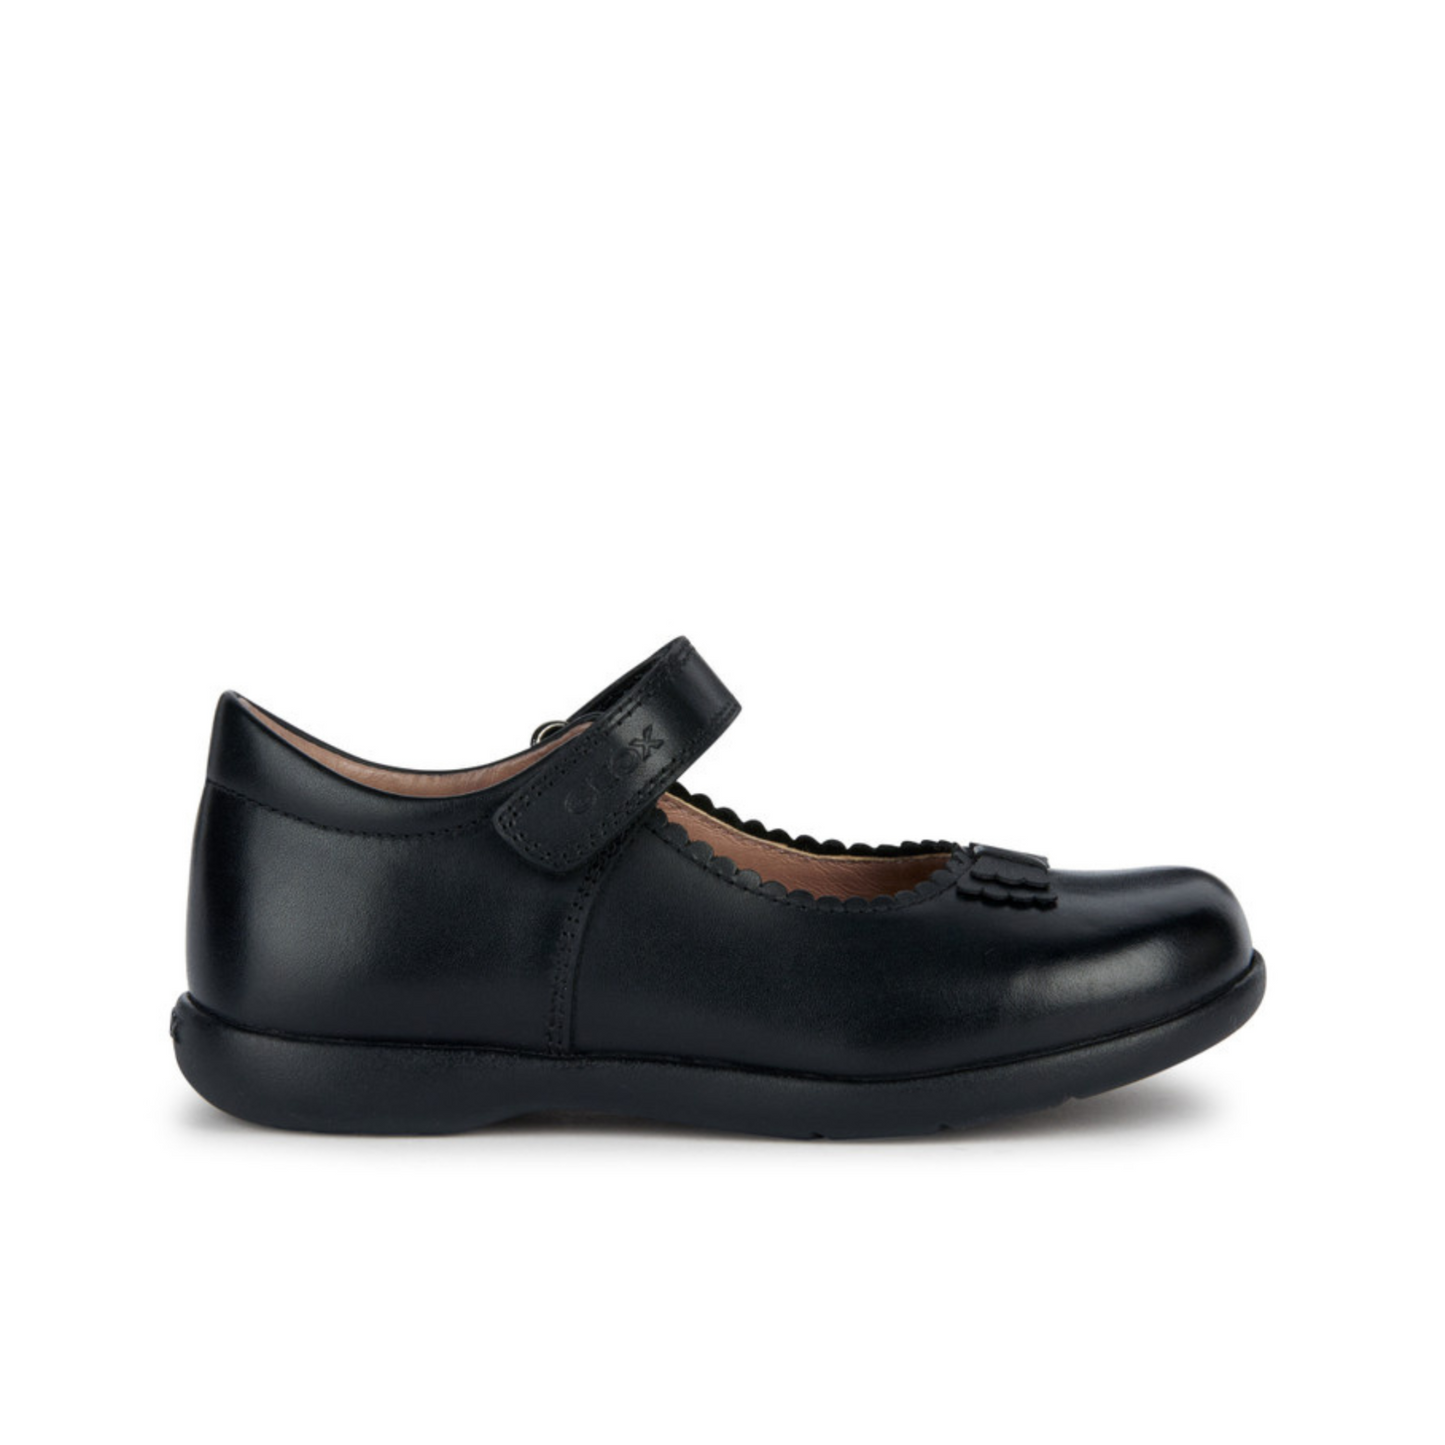 Naimara Bow Black Leather Mary Jane Style Girl's School Shoe